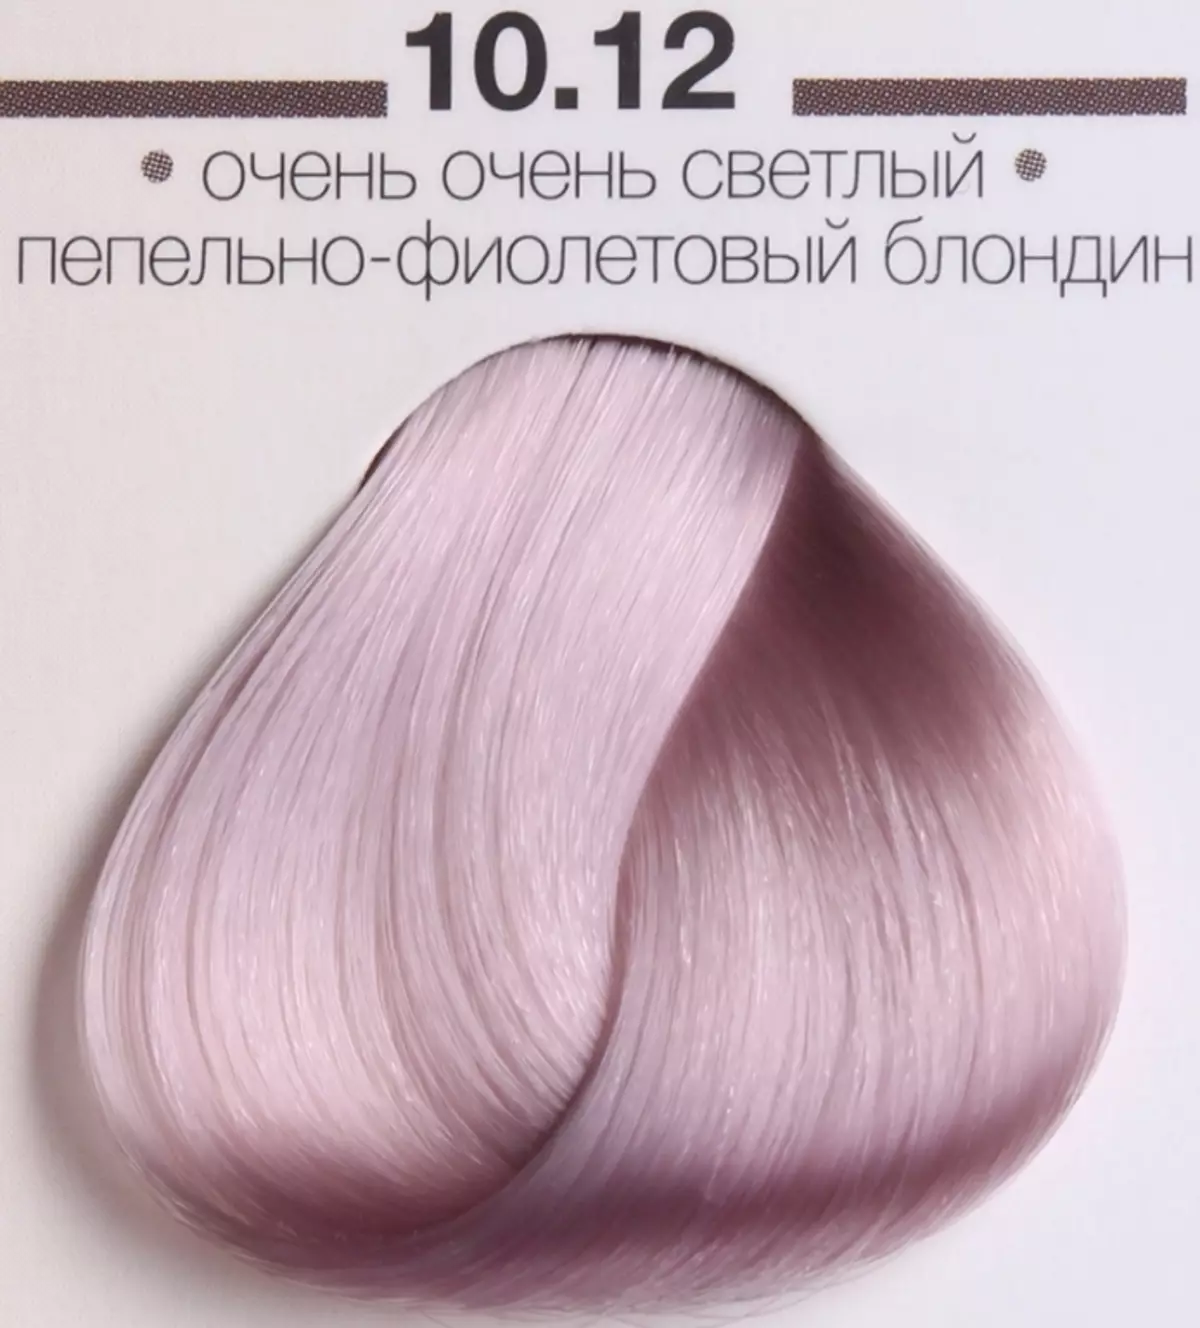 Ash-violetinė plaukų spalva (23 nuotraukos): blondinė, šviesa ir tamsiai šviesiaplaukė pelenai. Kaip dažyti plaukus? 5188_18